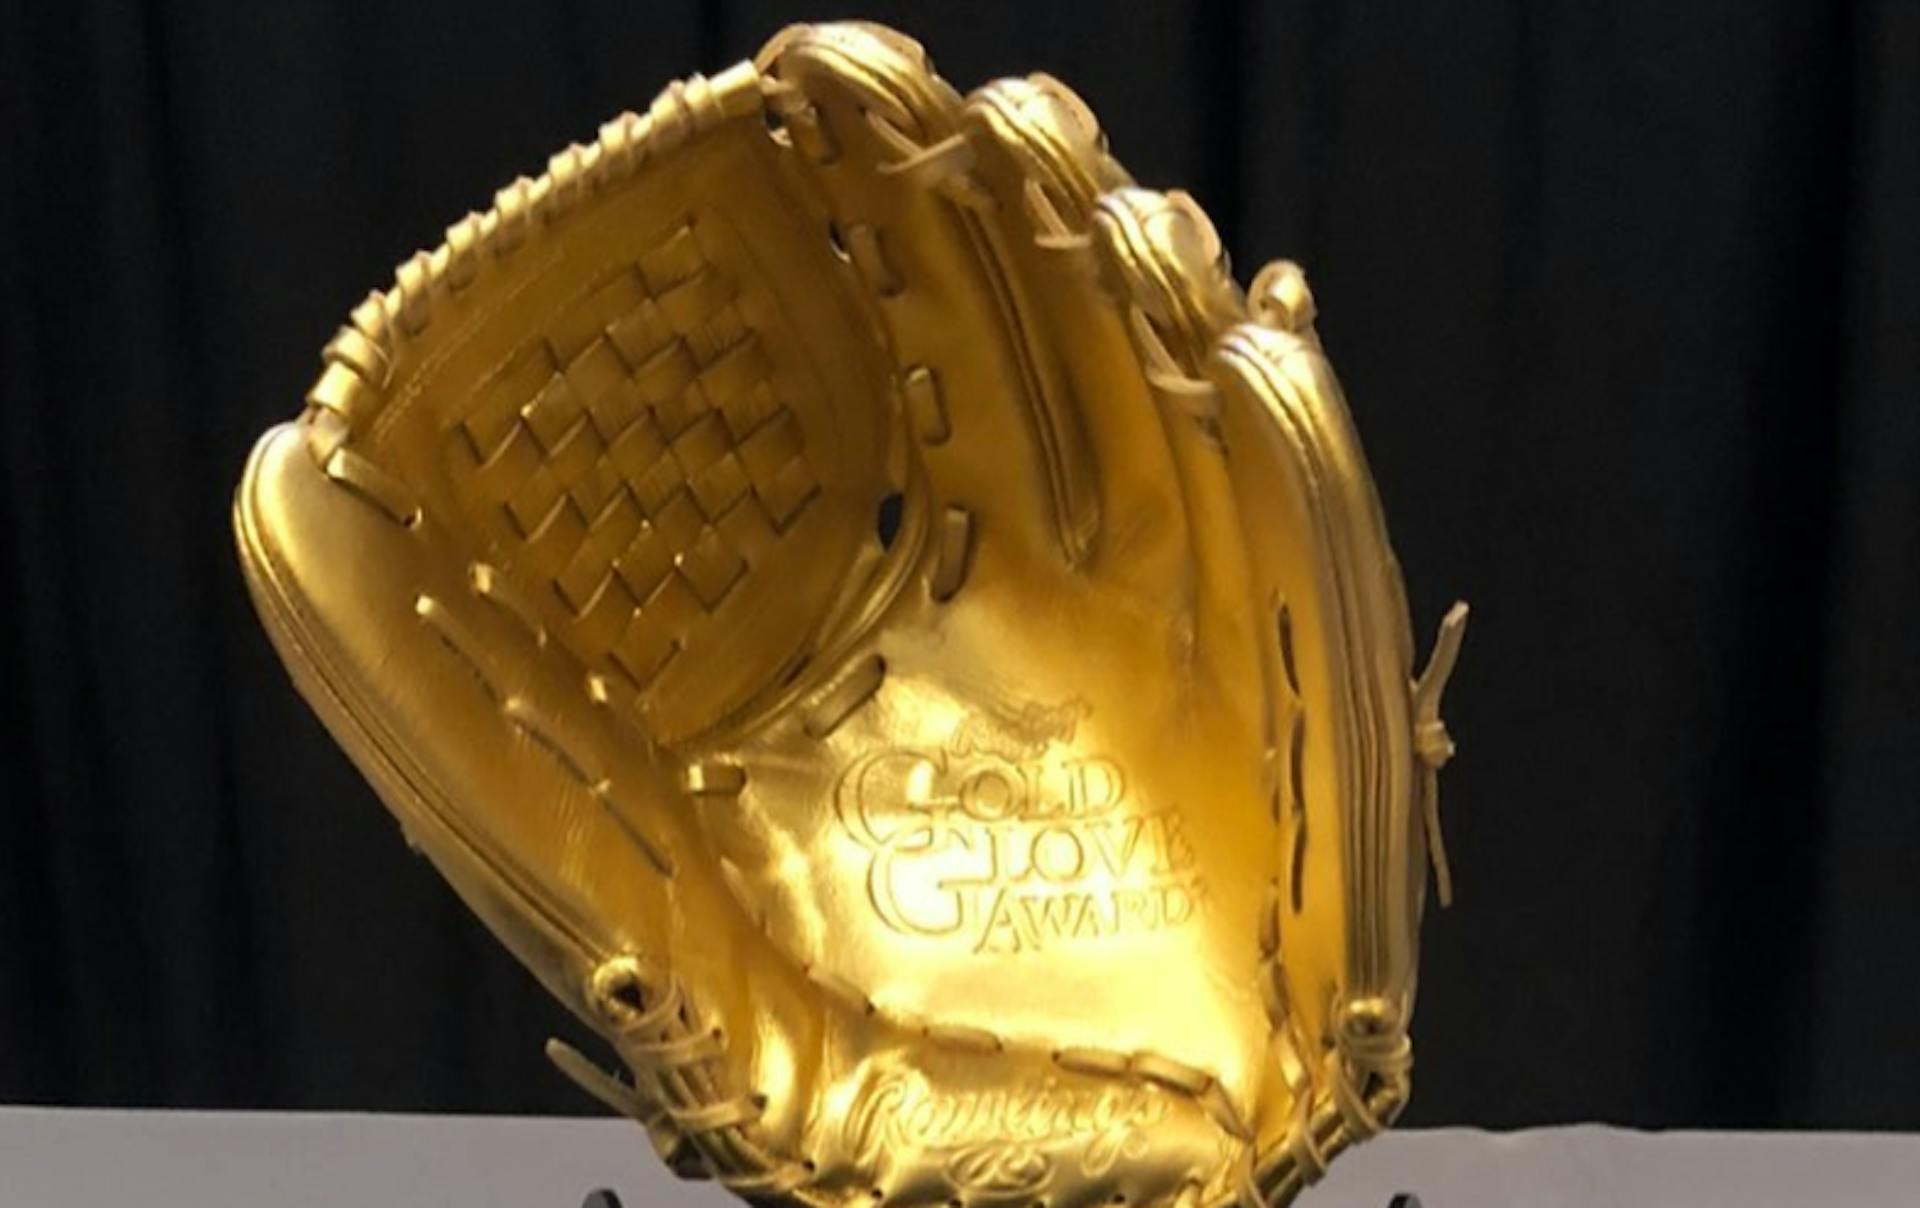 Rawlings Gold Glove Award, Learn More & See Winners